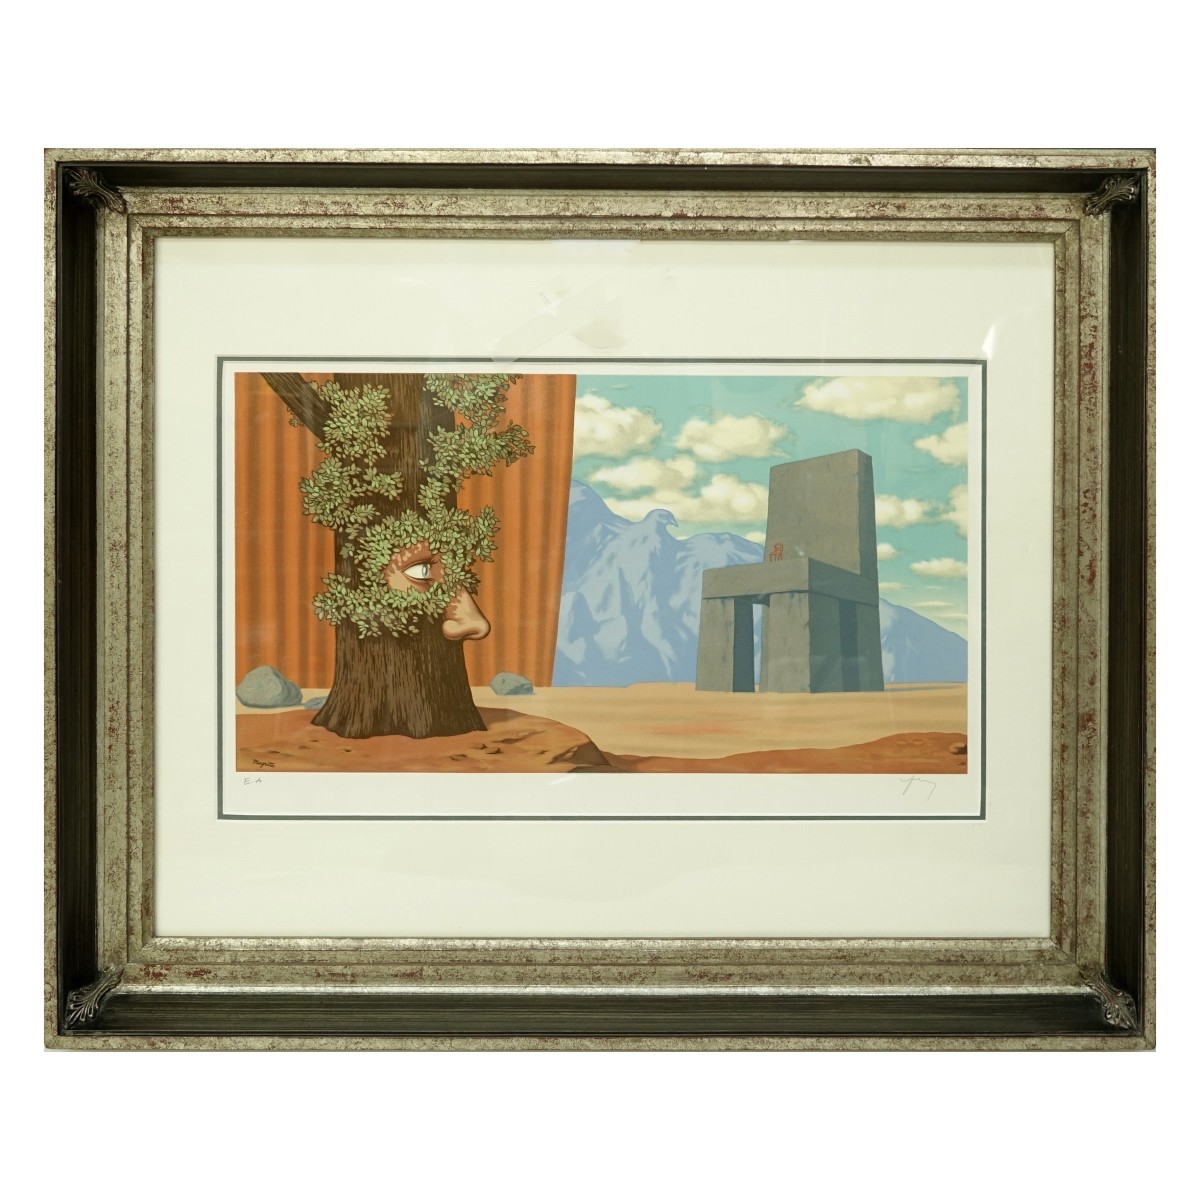 After: Rene Magritte, Belgian (1898 - 1967)